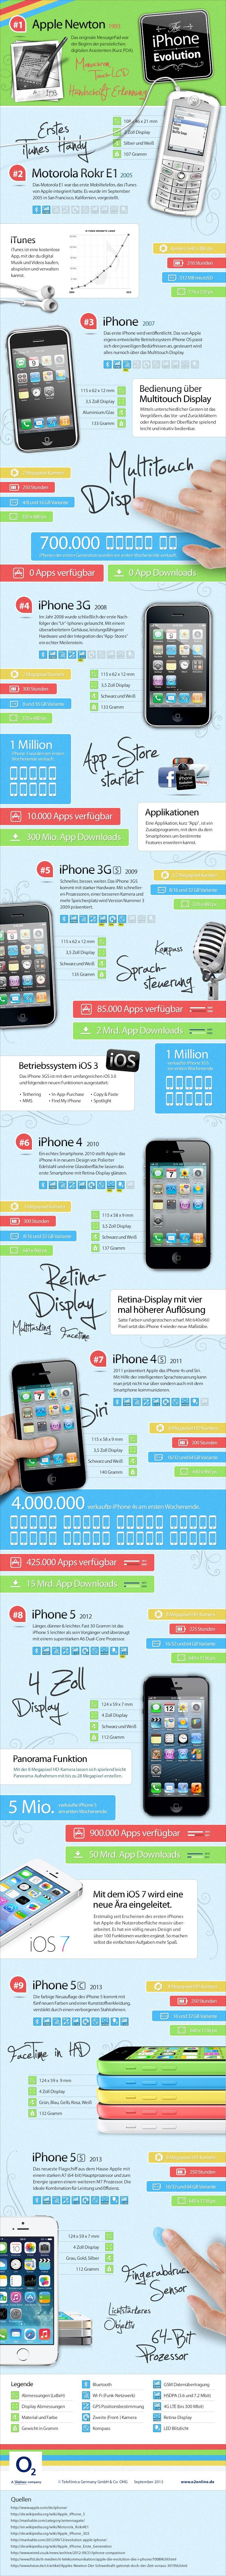 La evolución de los dispositivos de Apple #Infografía #Apple #iPhone #Evolución